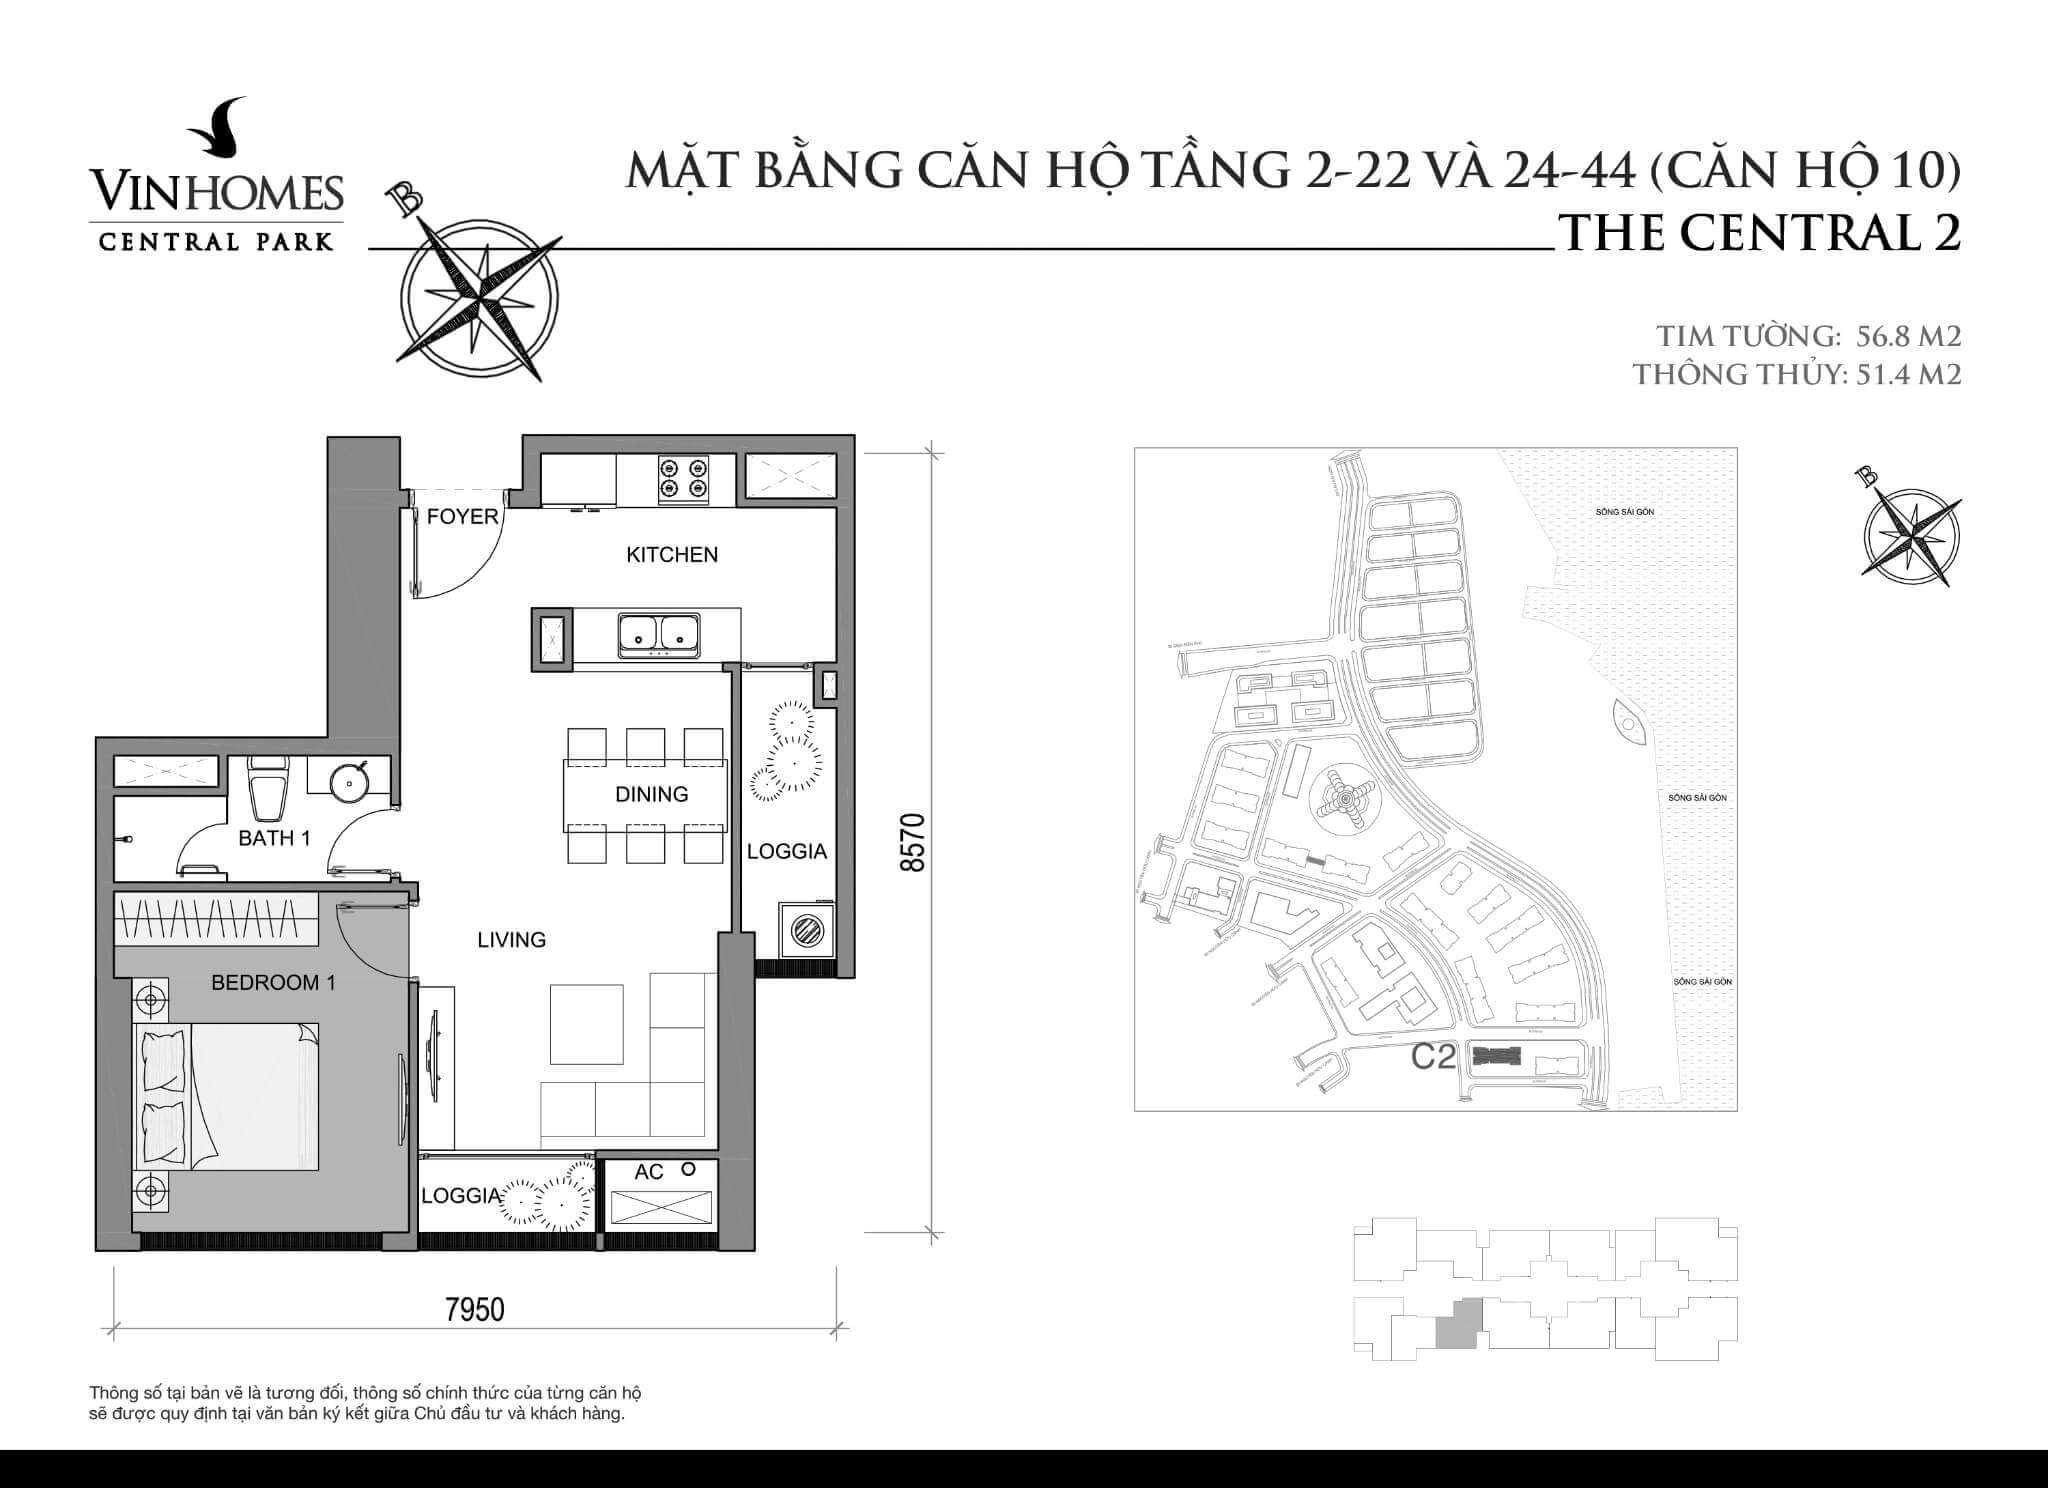 layout căn hộ số 10 tầng 2-44 Central 2